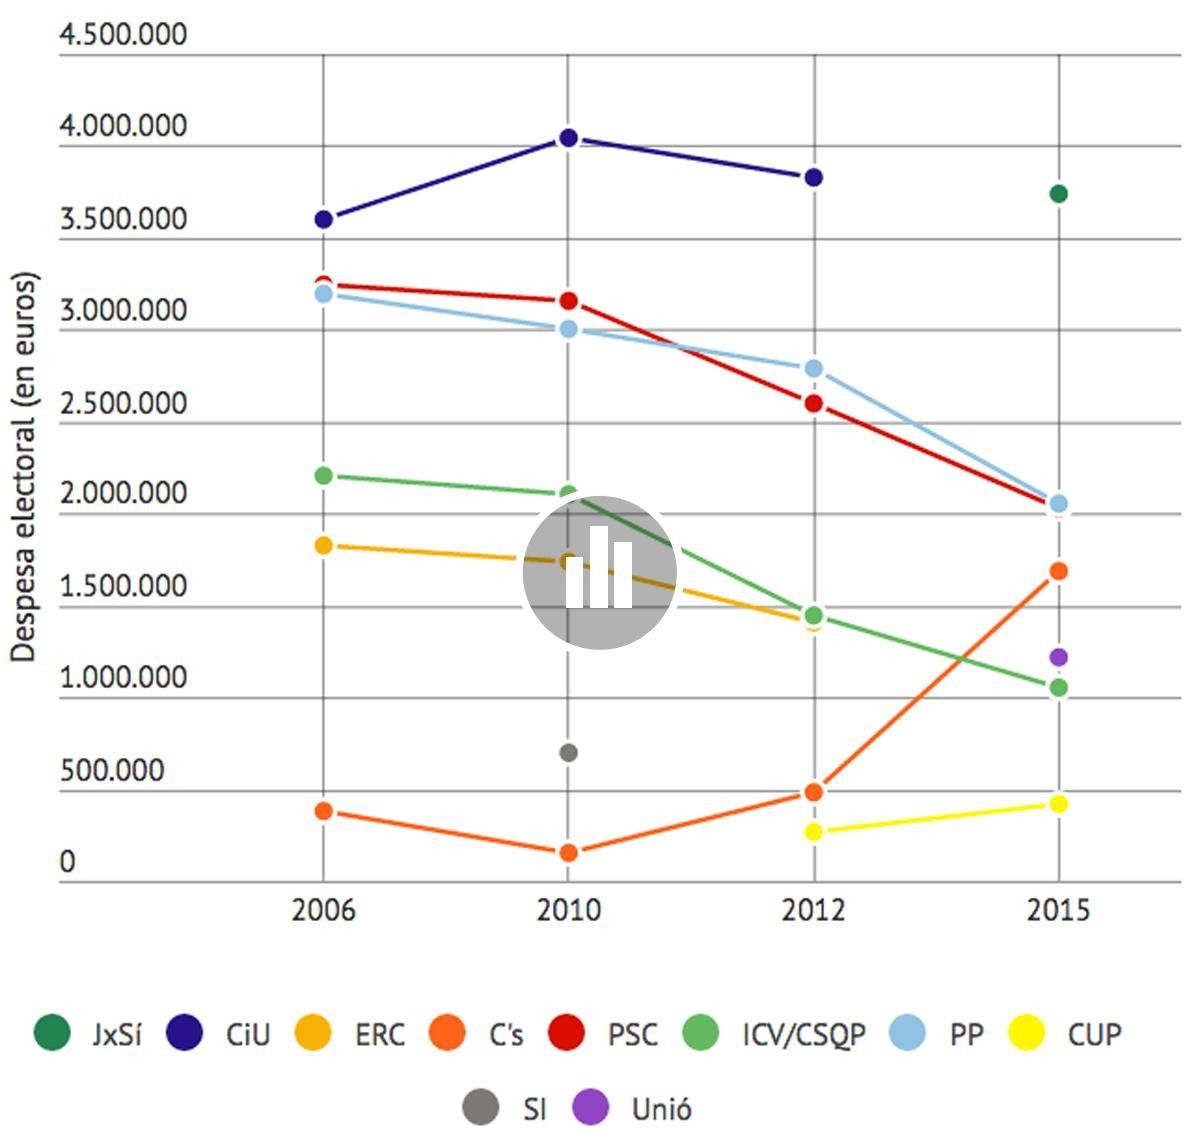 Gràfiques sobre l'evolució de despesa electoral del 2006 al 2015 per partits